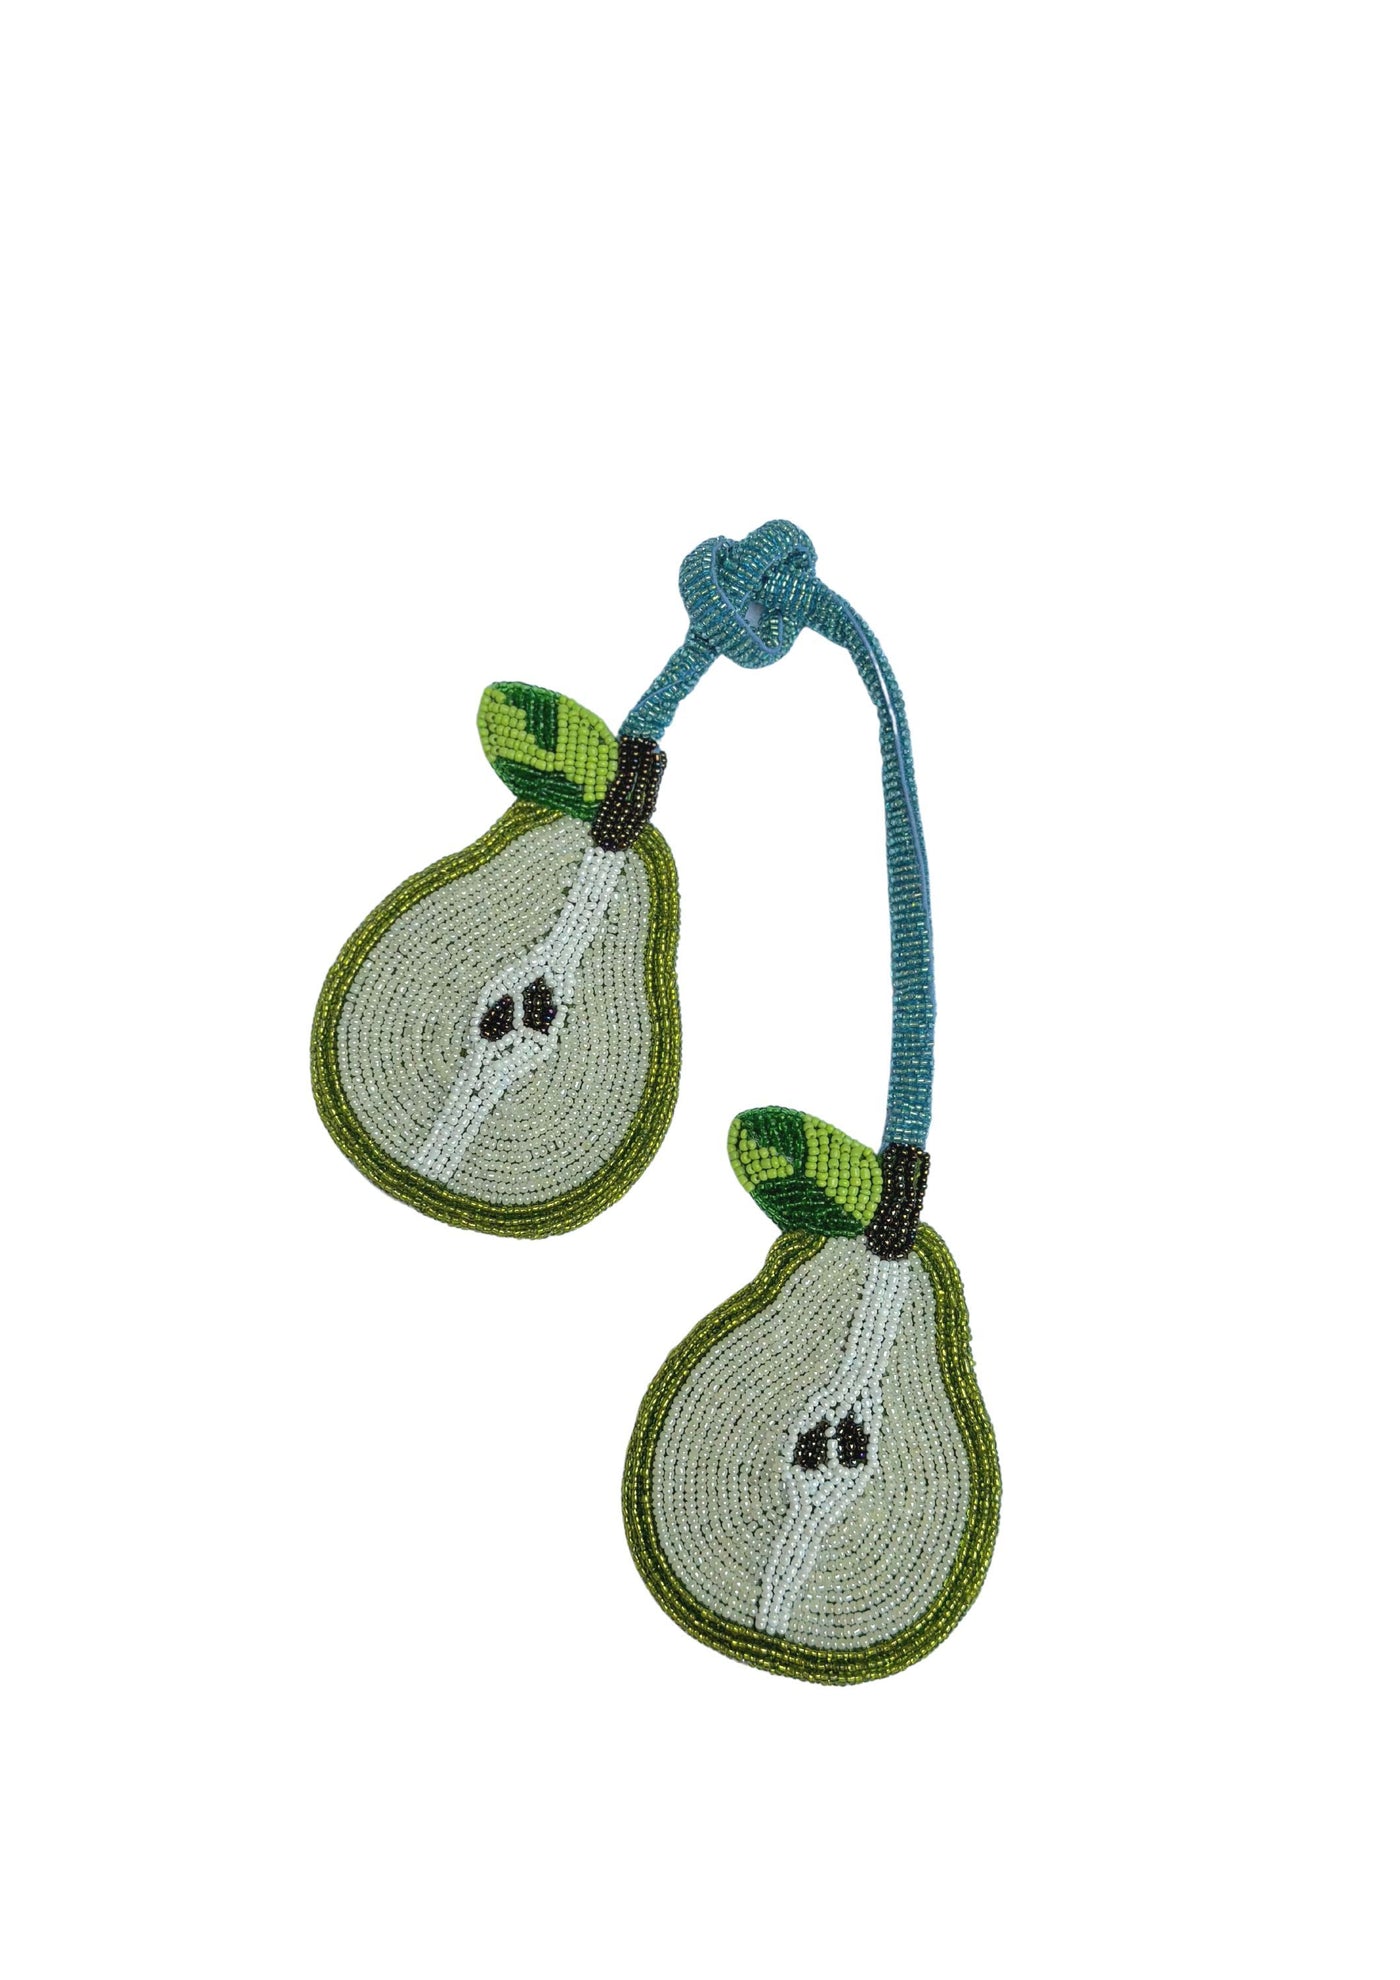 Beaded Bag Charm - Pear